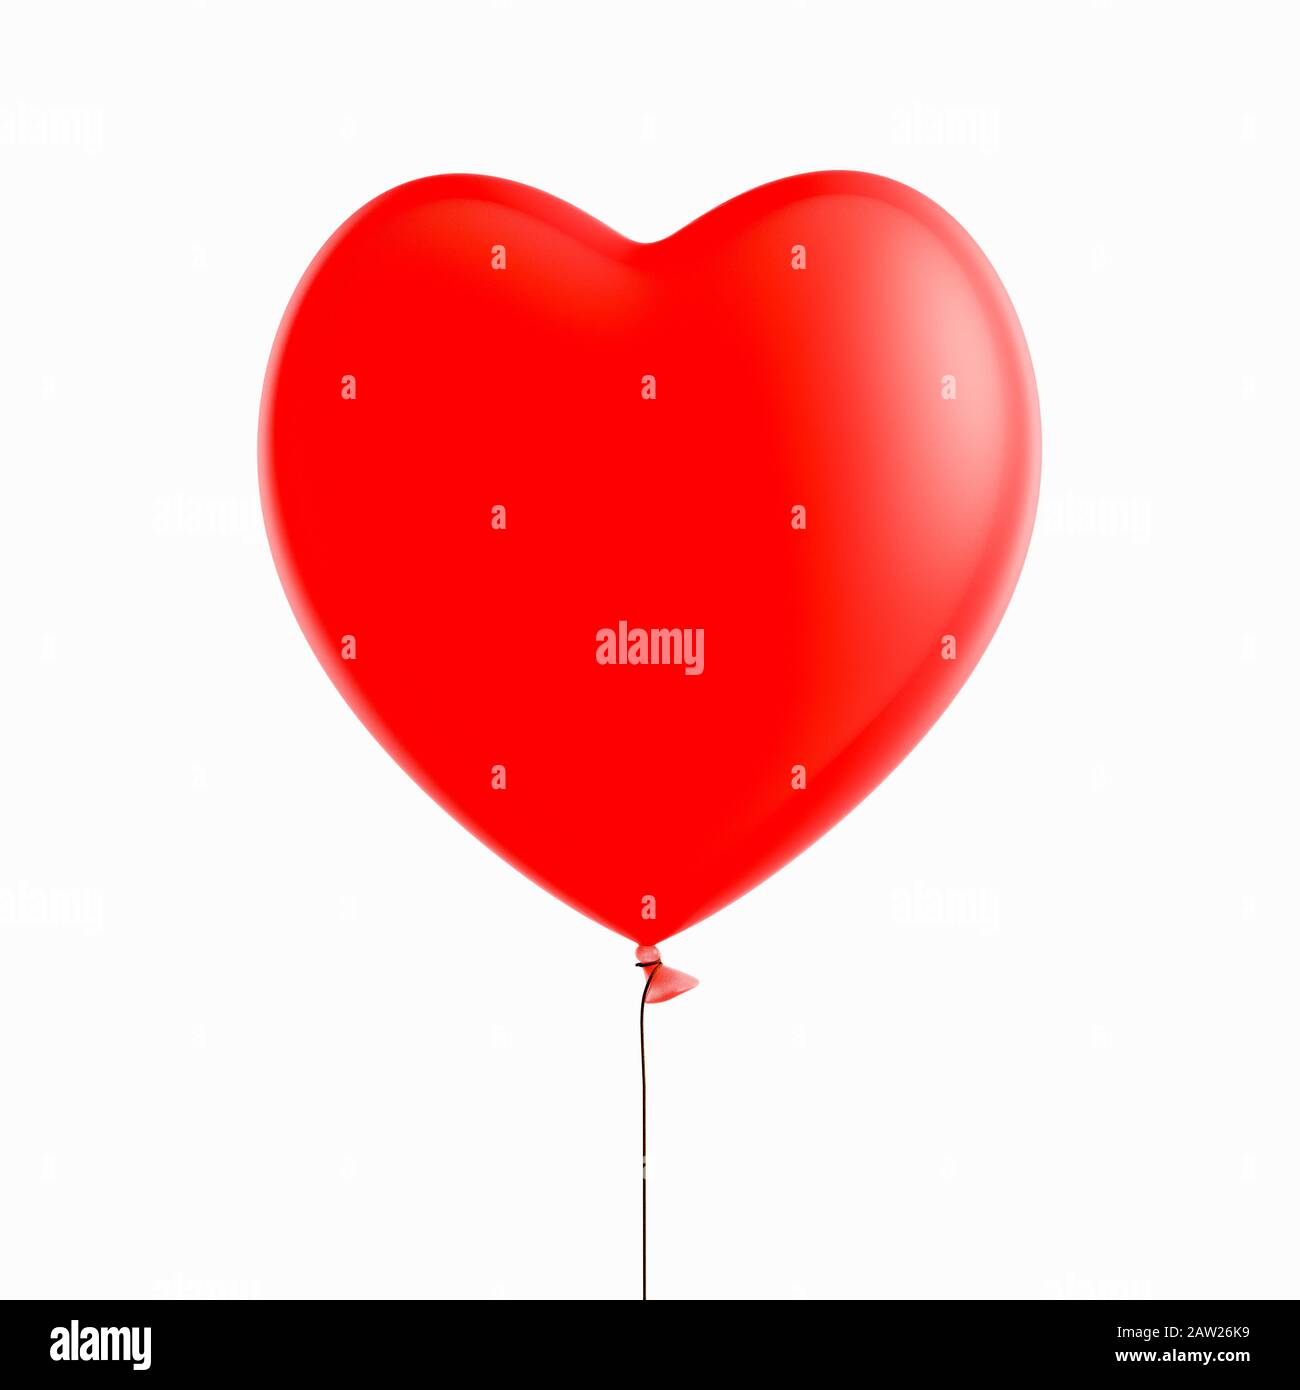 Globo rojo con forma de corazón inflado sobre fondo blanco Foto de stock